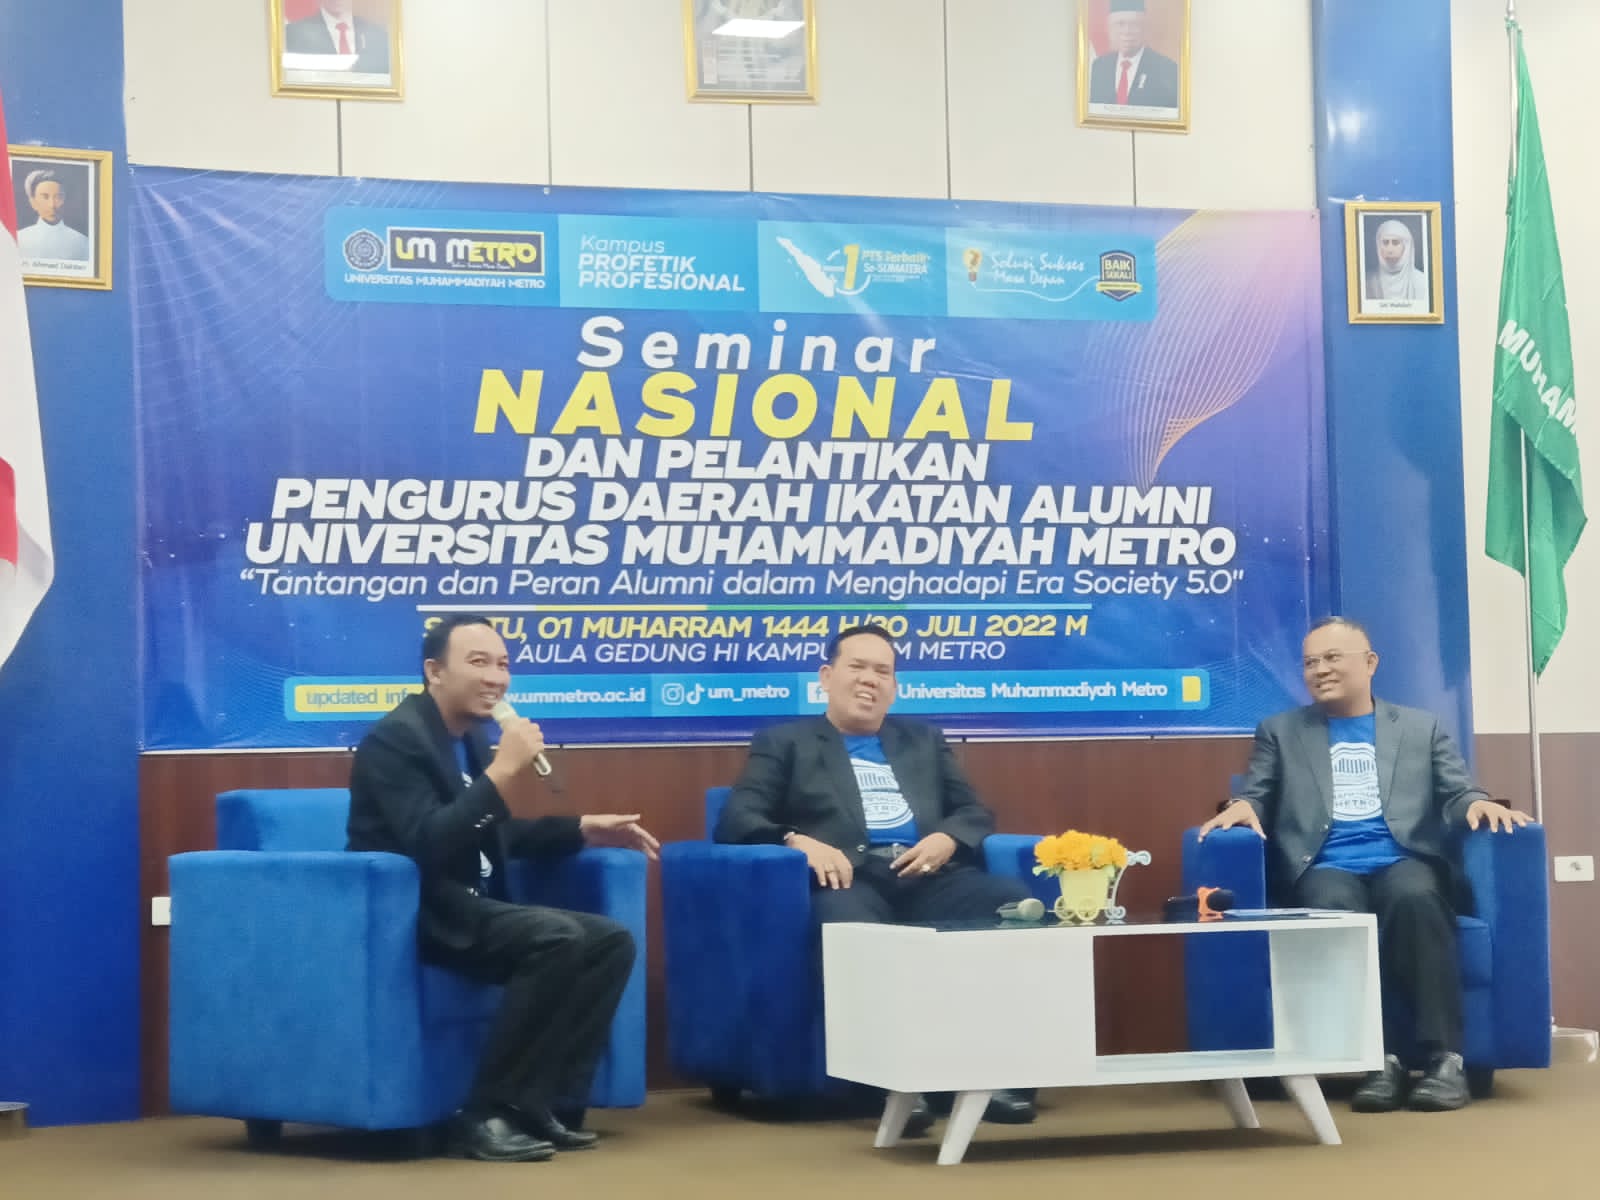 Seminar Nasional yang Diselenggarakan oleh Pimpinan Pusat IKA UM Metro